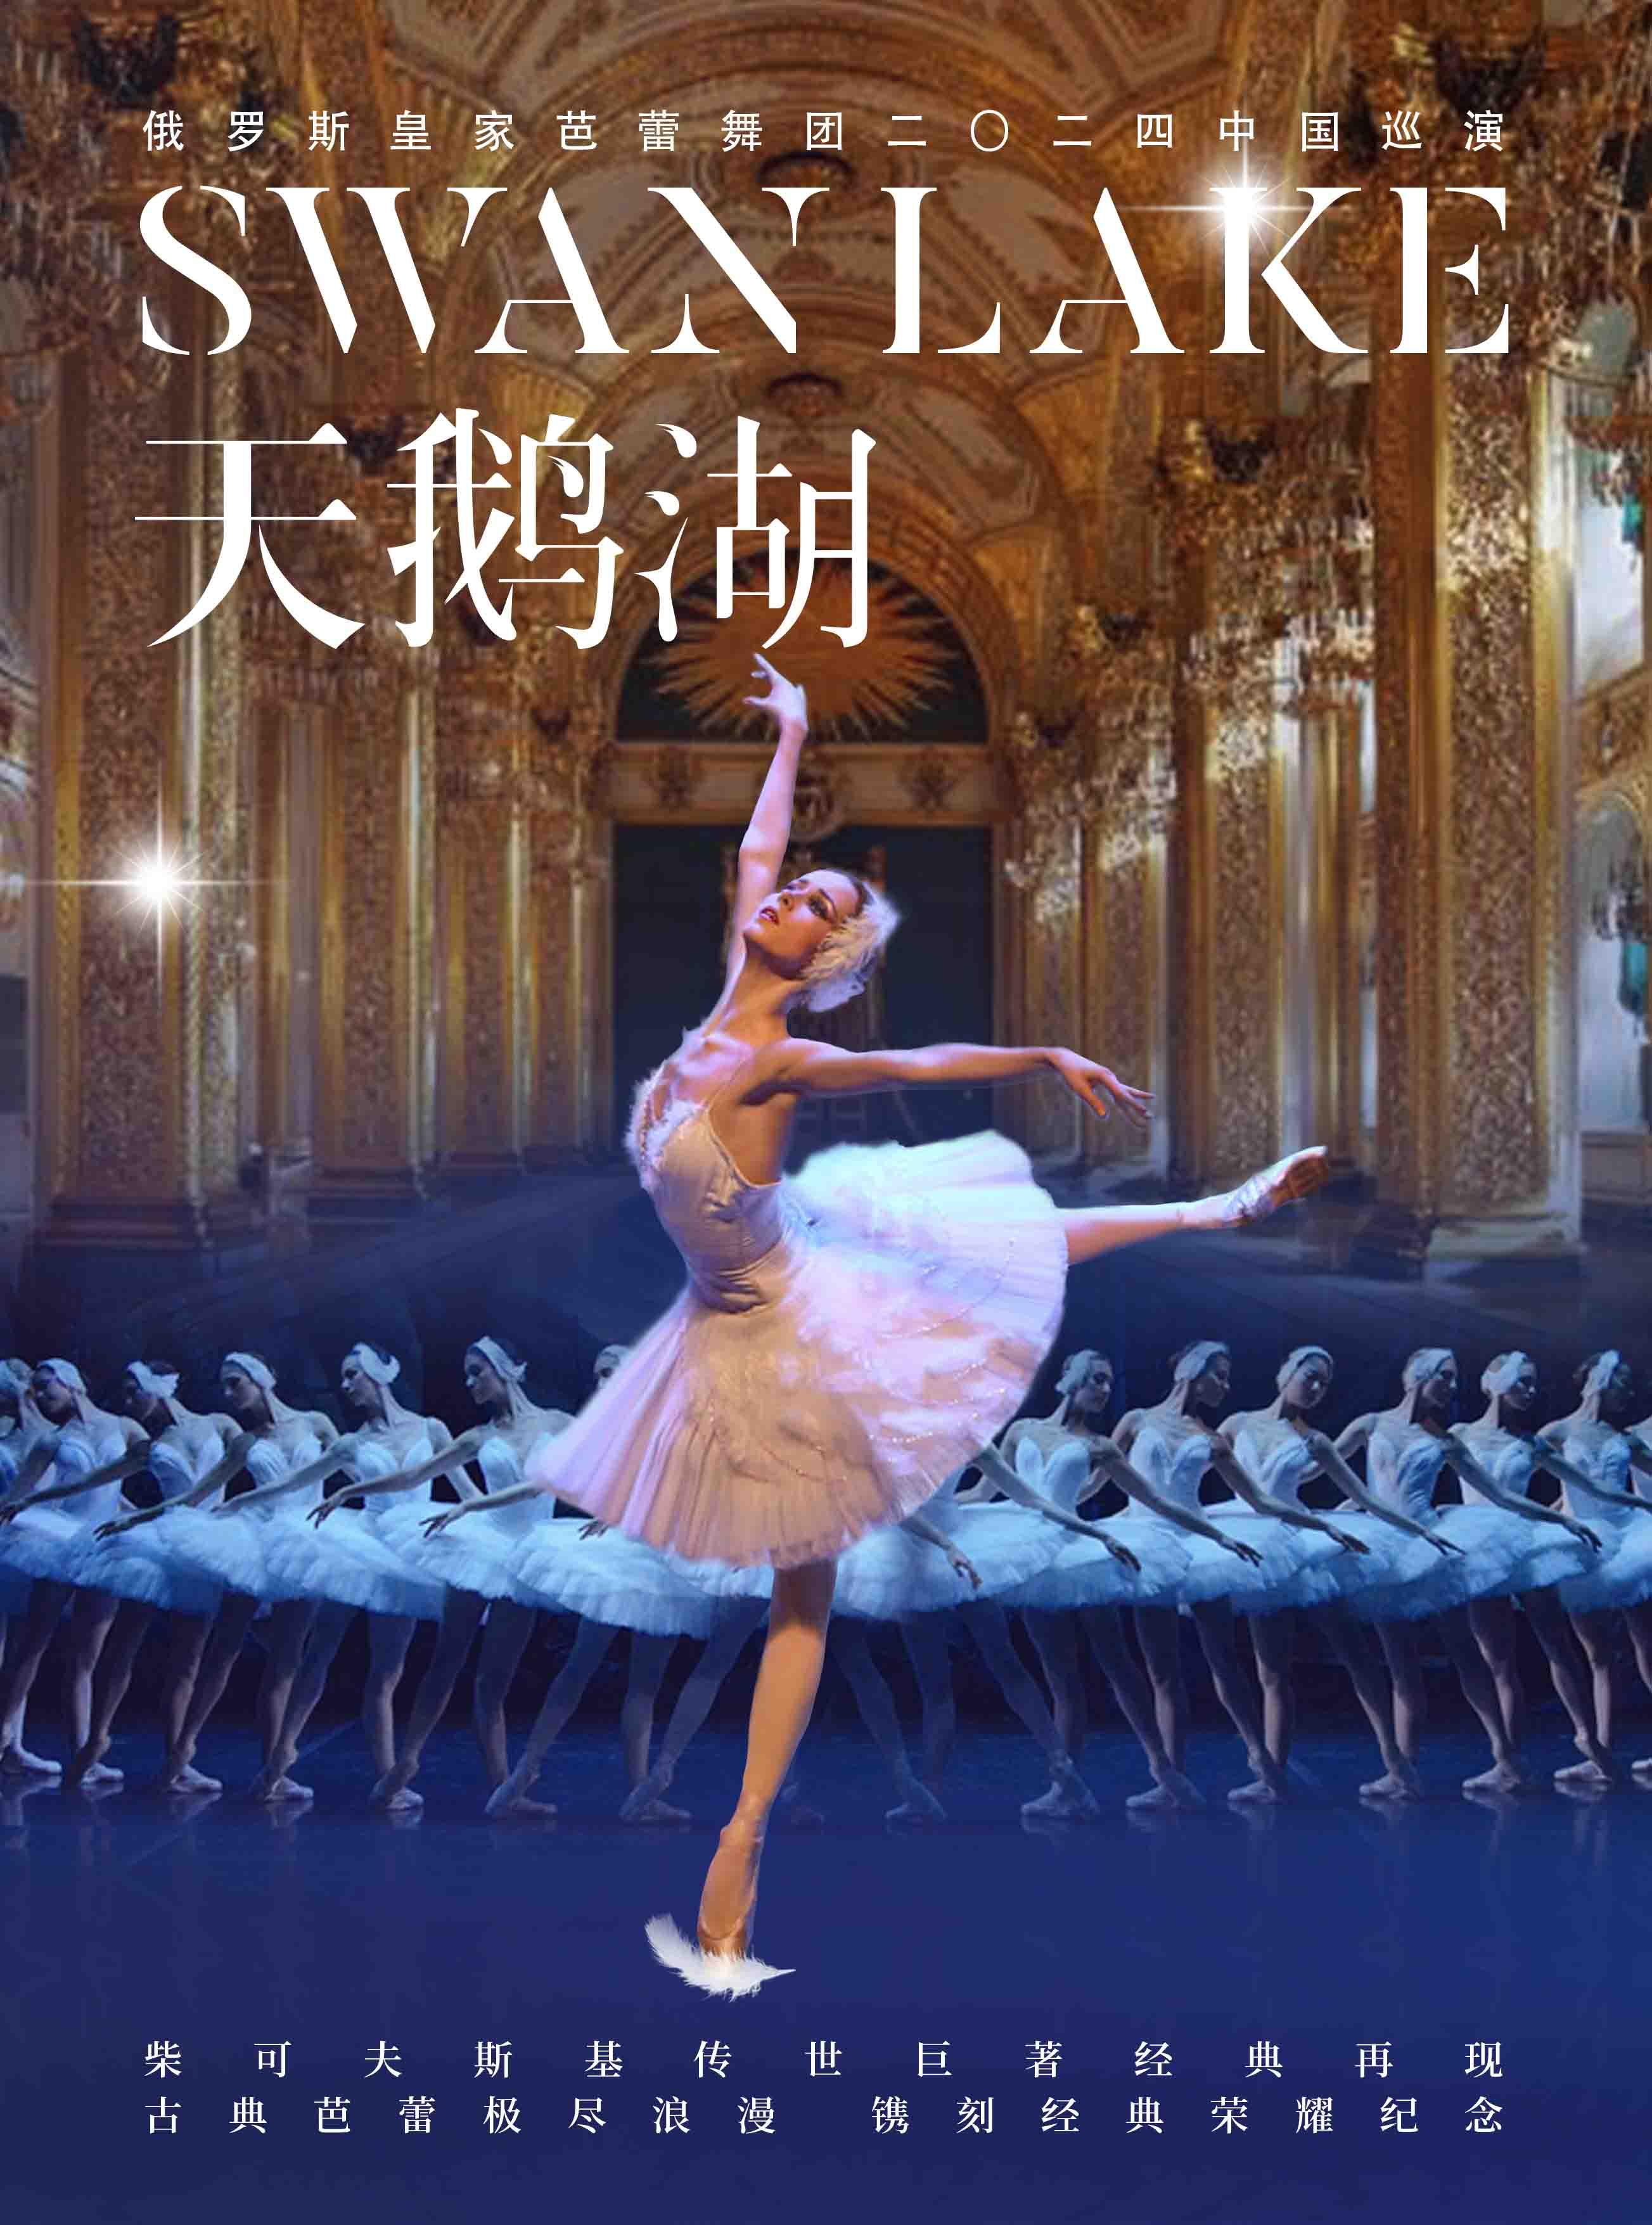 俄罗斯皇家芭蕾舞团巡演《天鹅湖》北京